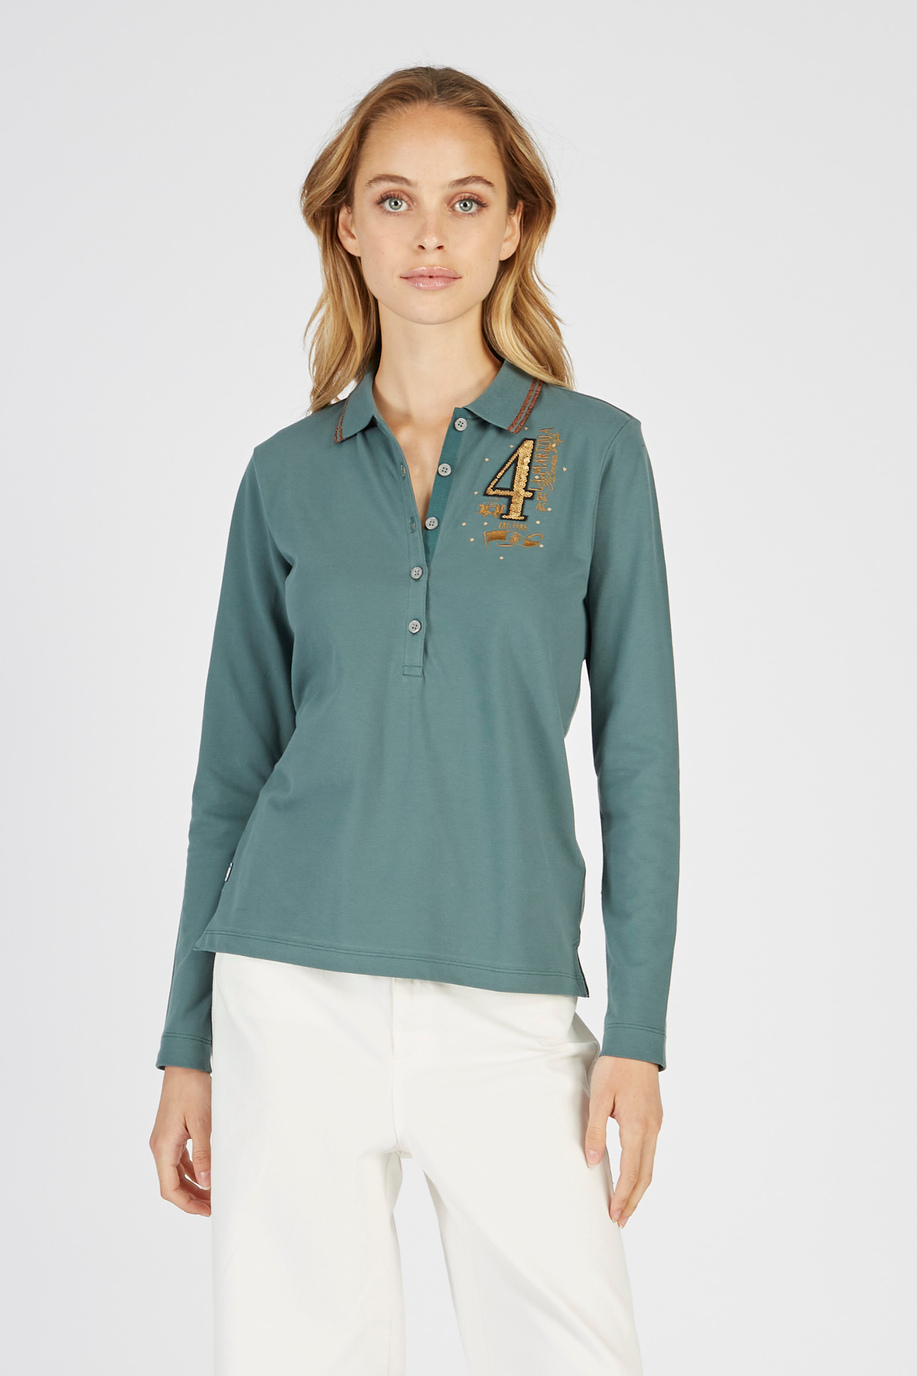 Langarm-Poloshirt Argentina aus elastischer Baumwolle in regulärer Passform für Damen - Damen | La Martina - Official Online Shop